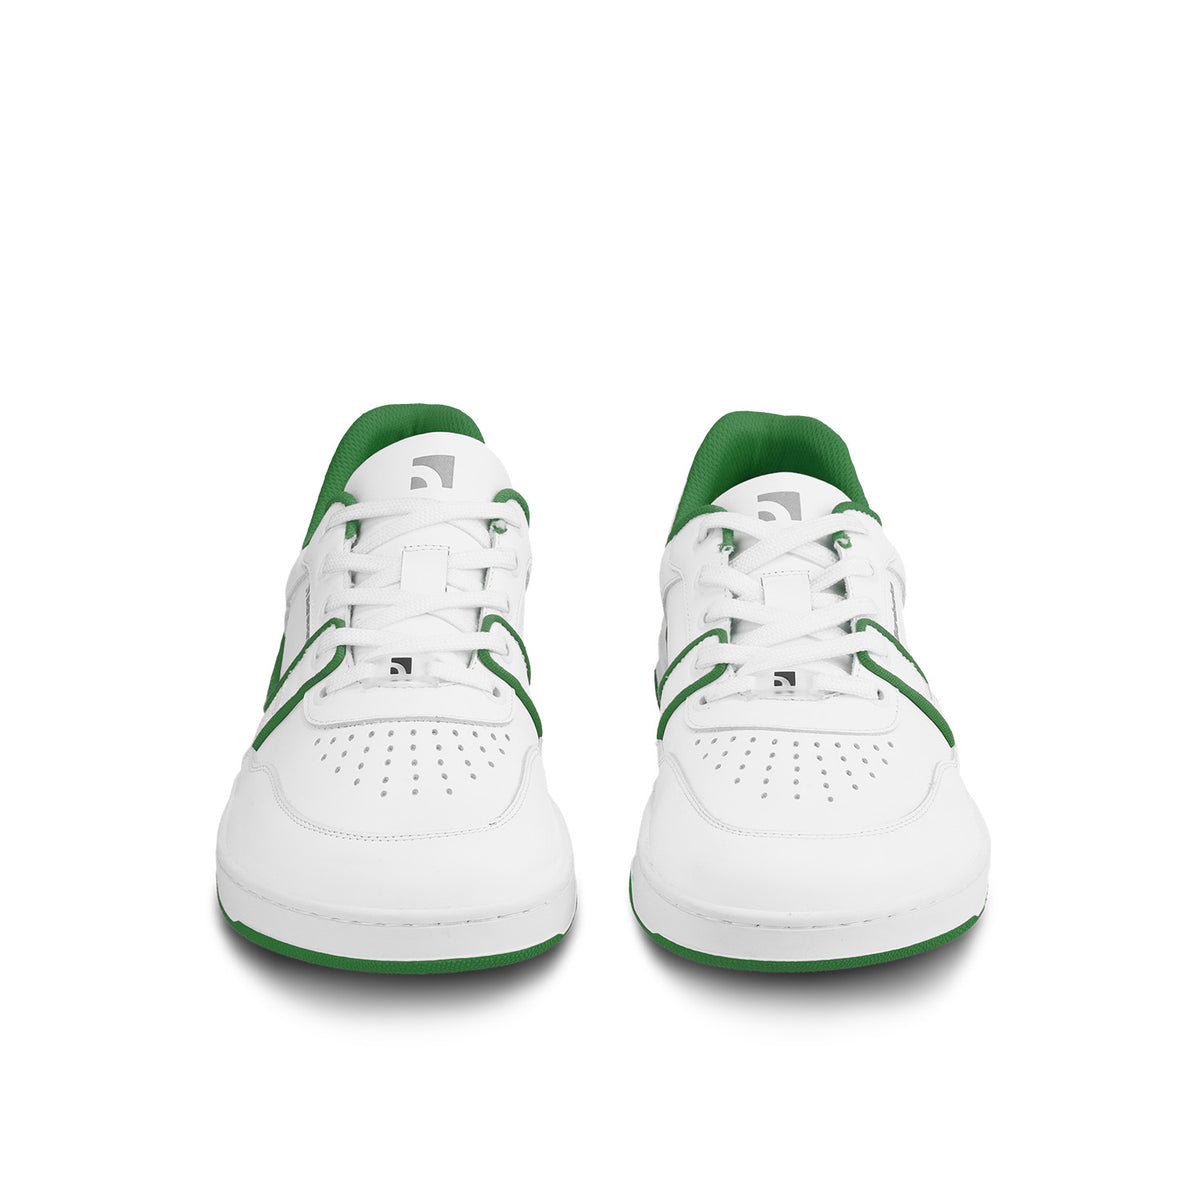 Barefoot Sneakers Barebarics Arise - White & Green 4  - OzBarefoot